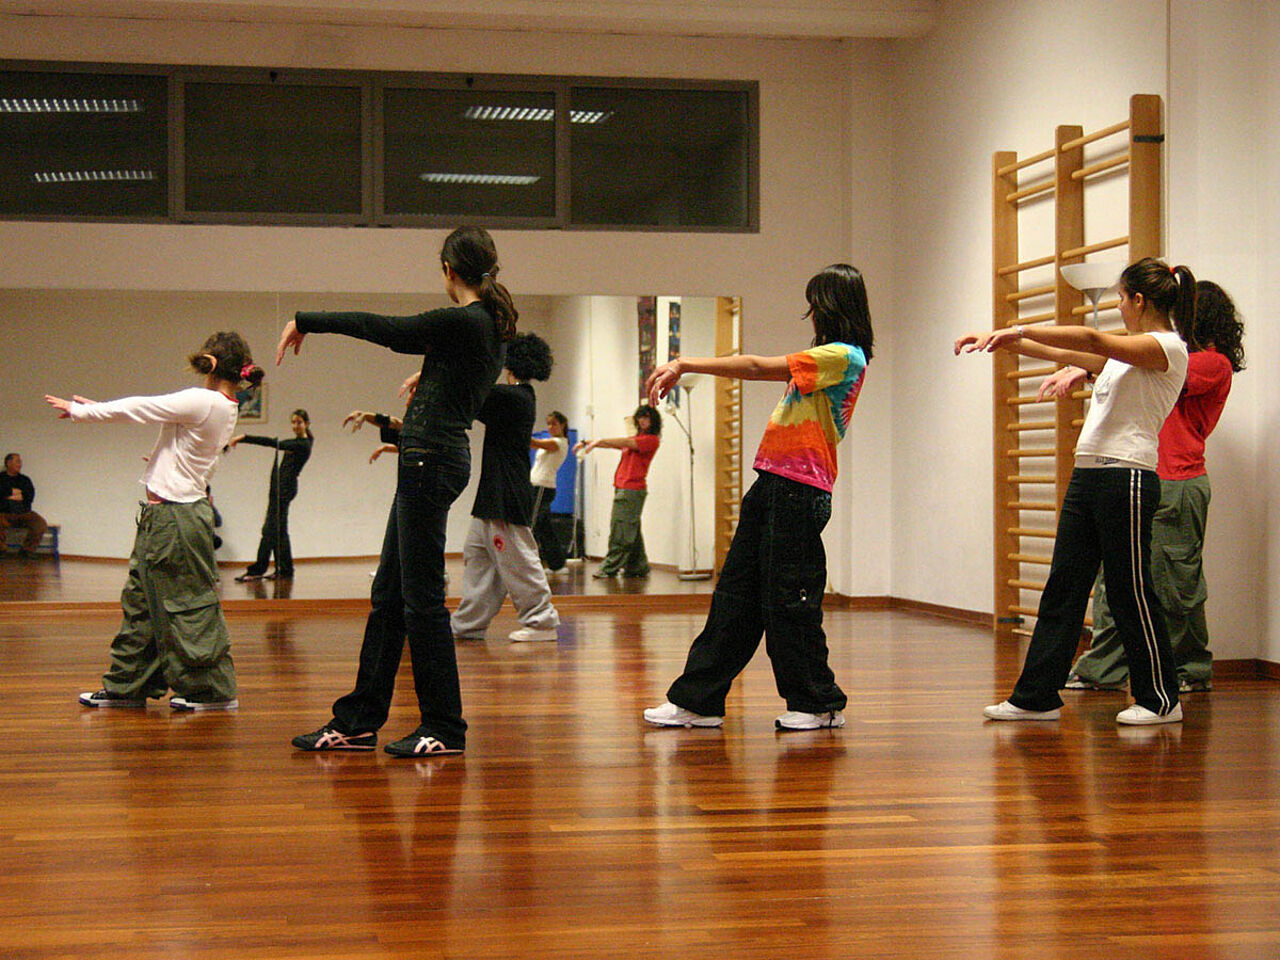 スタジオでダンスの練習をしている子どもたちの画像